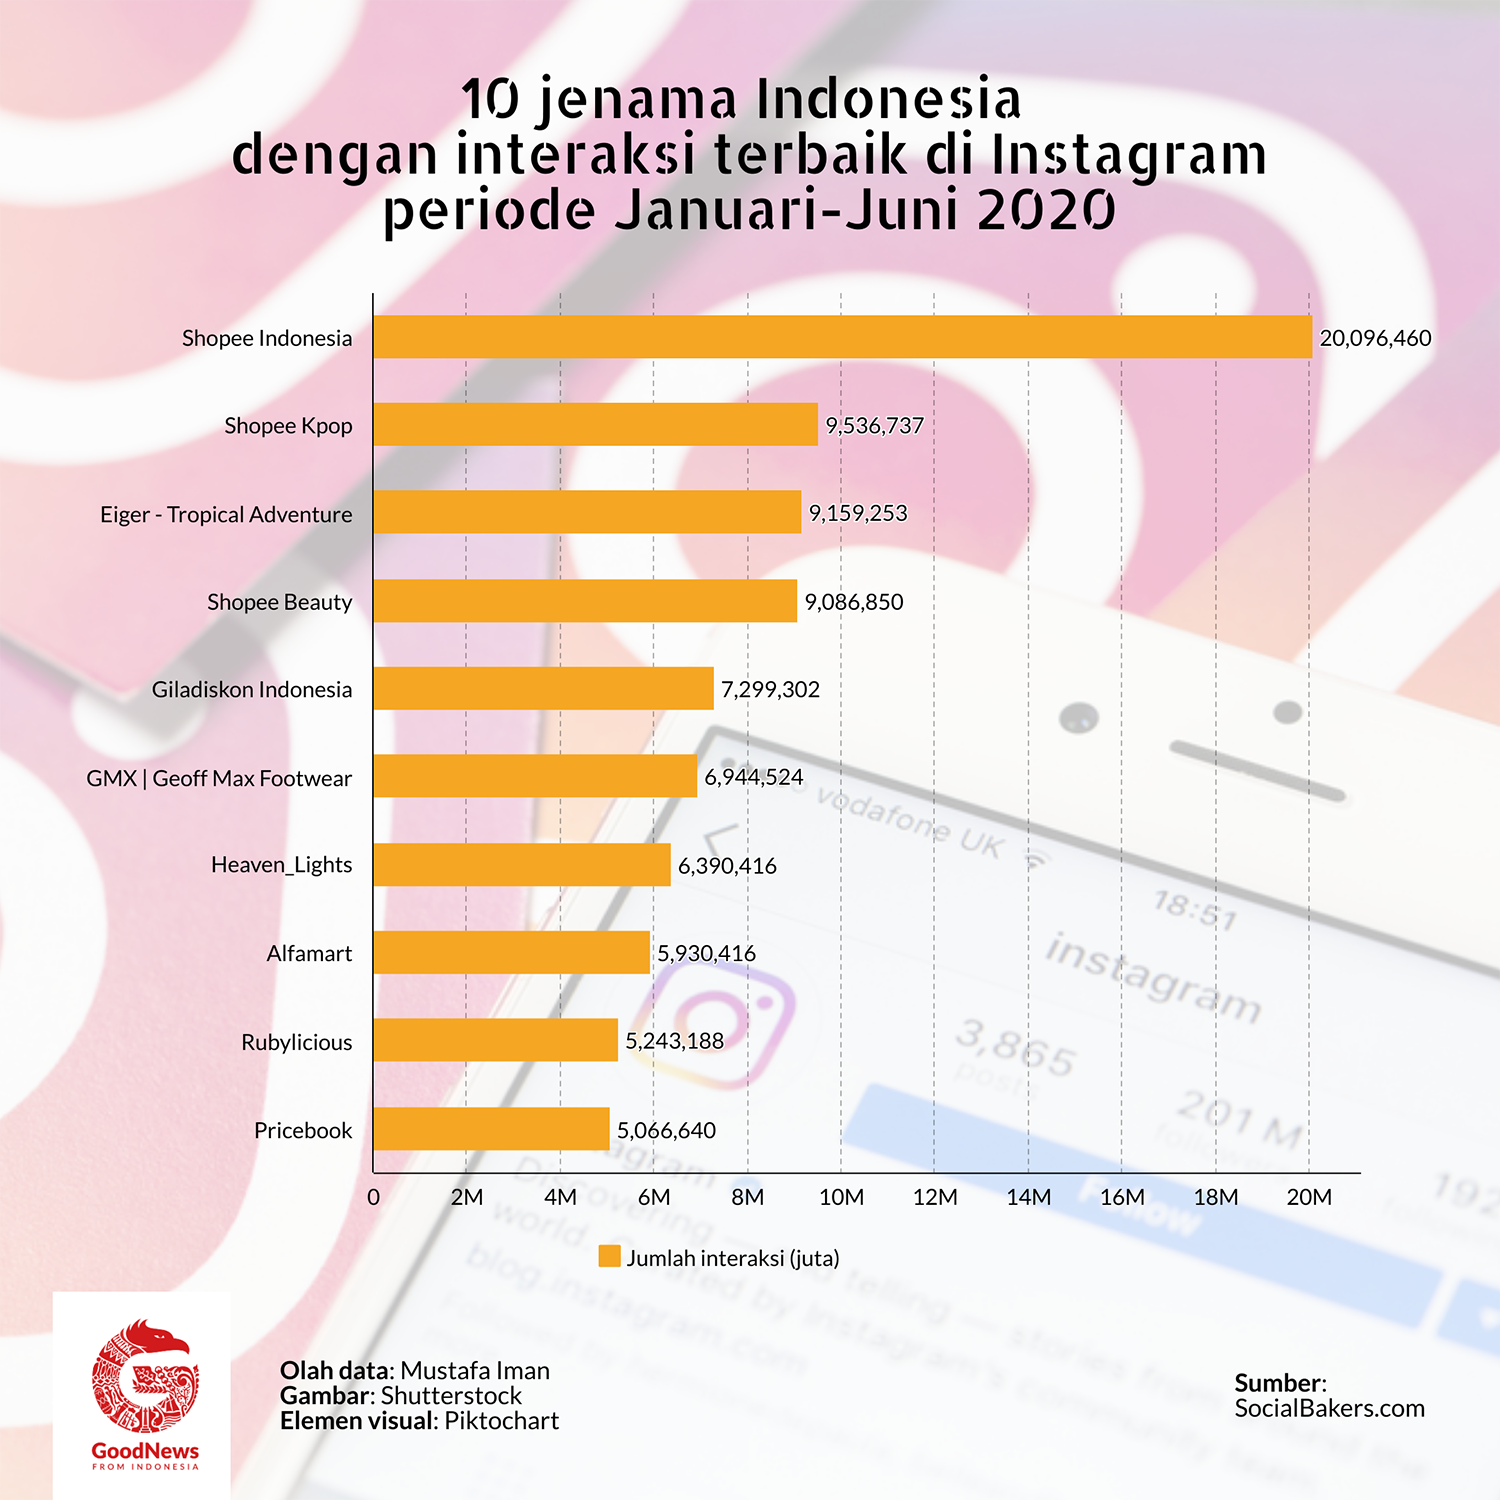 Brand Indonesia dengan interaksi terbaik di instagram